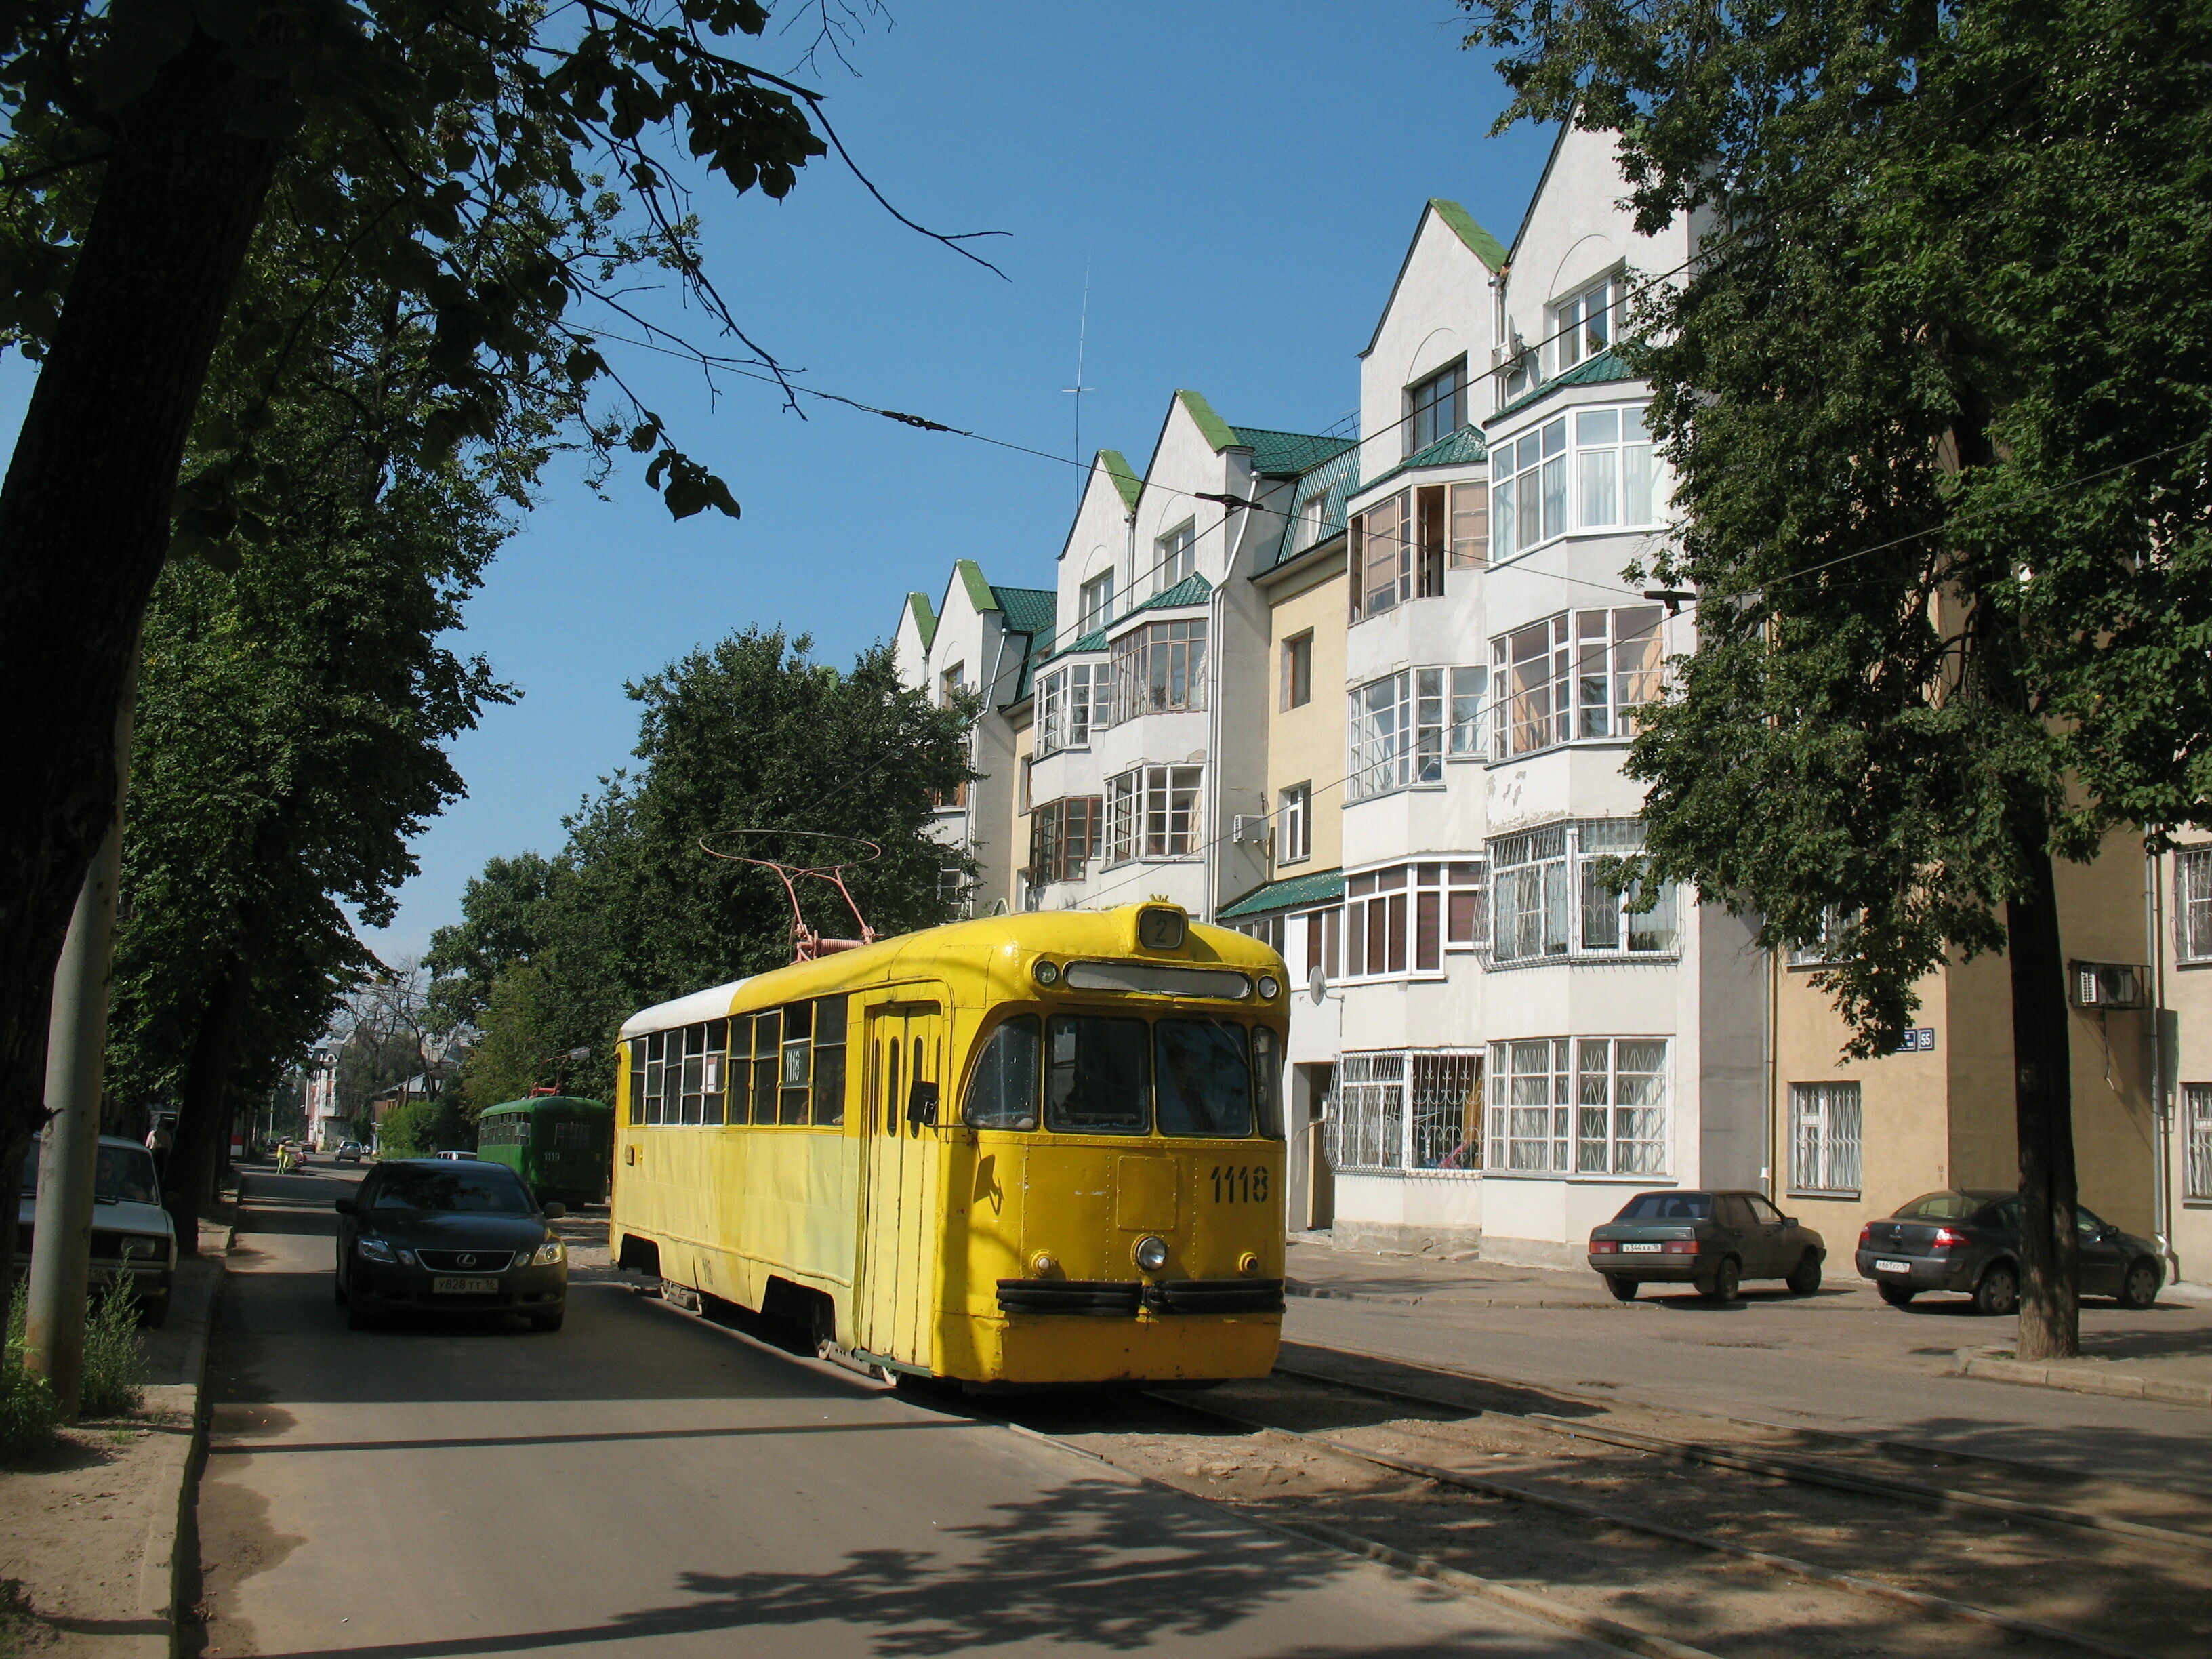 Трамвай РВЗ-6М2 1118, маршрут 2